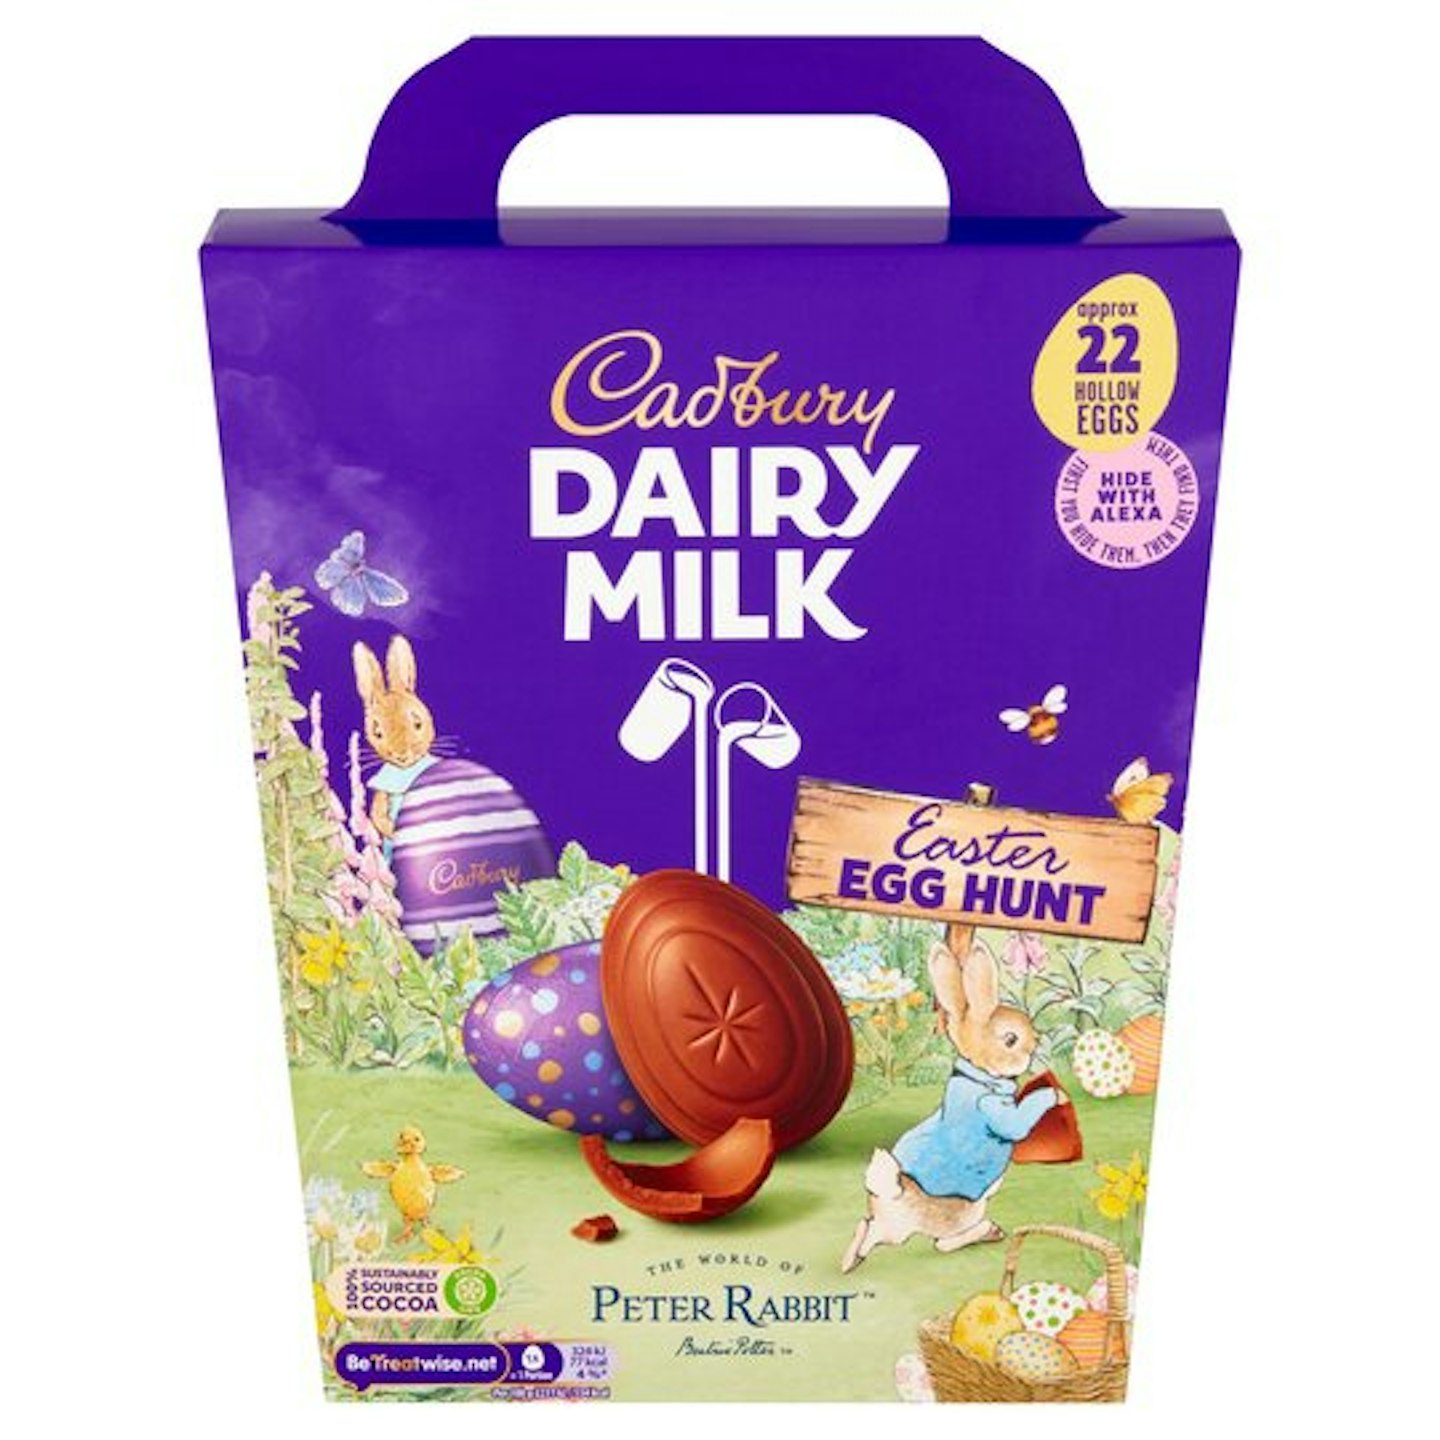 Cadbury easter egg hunt eggs